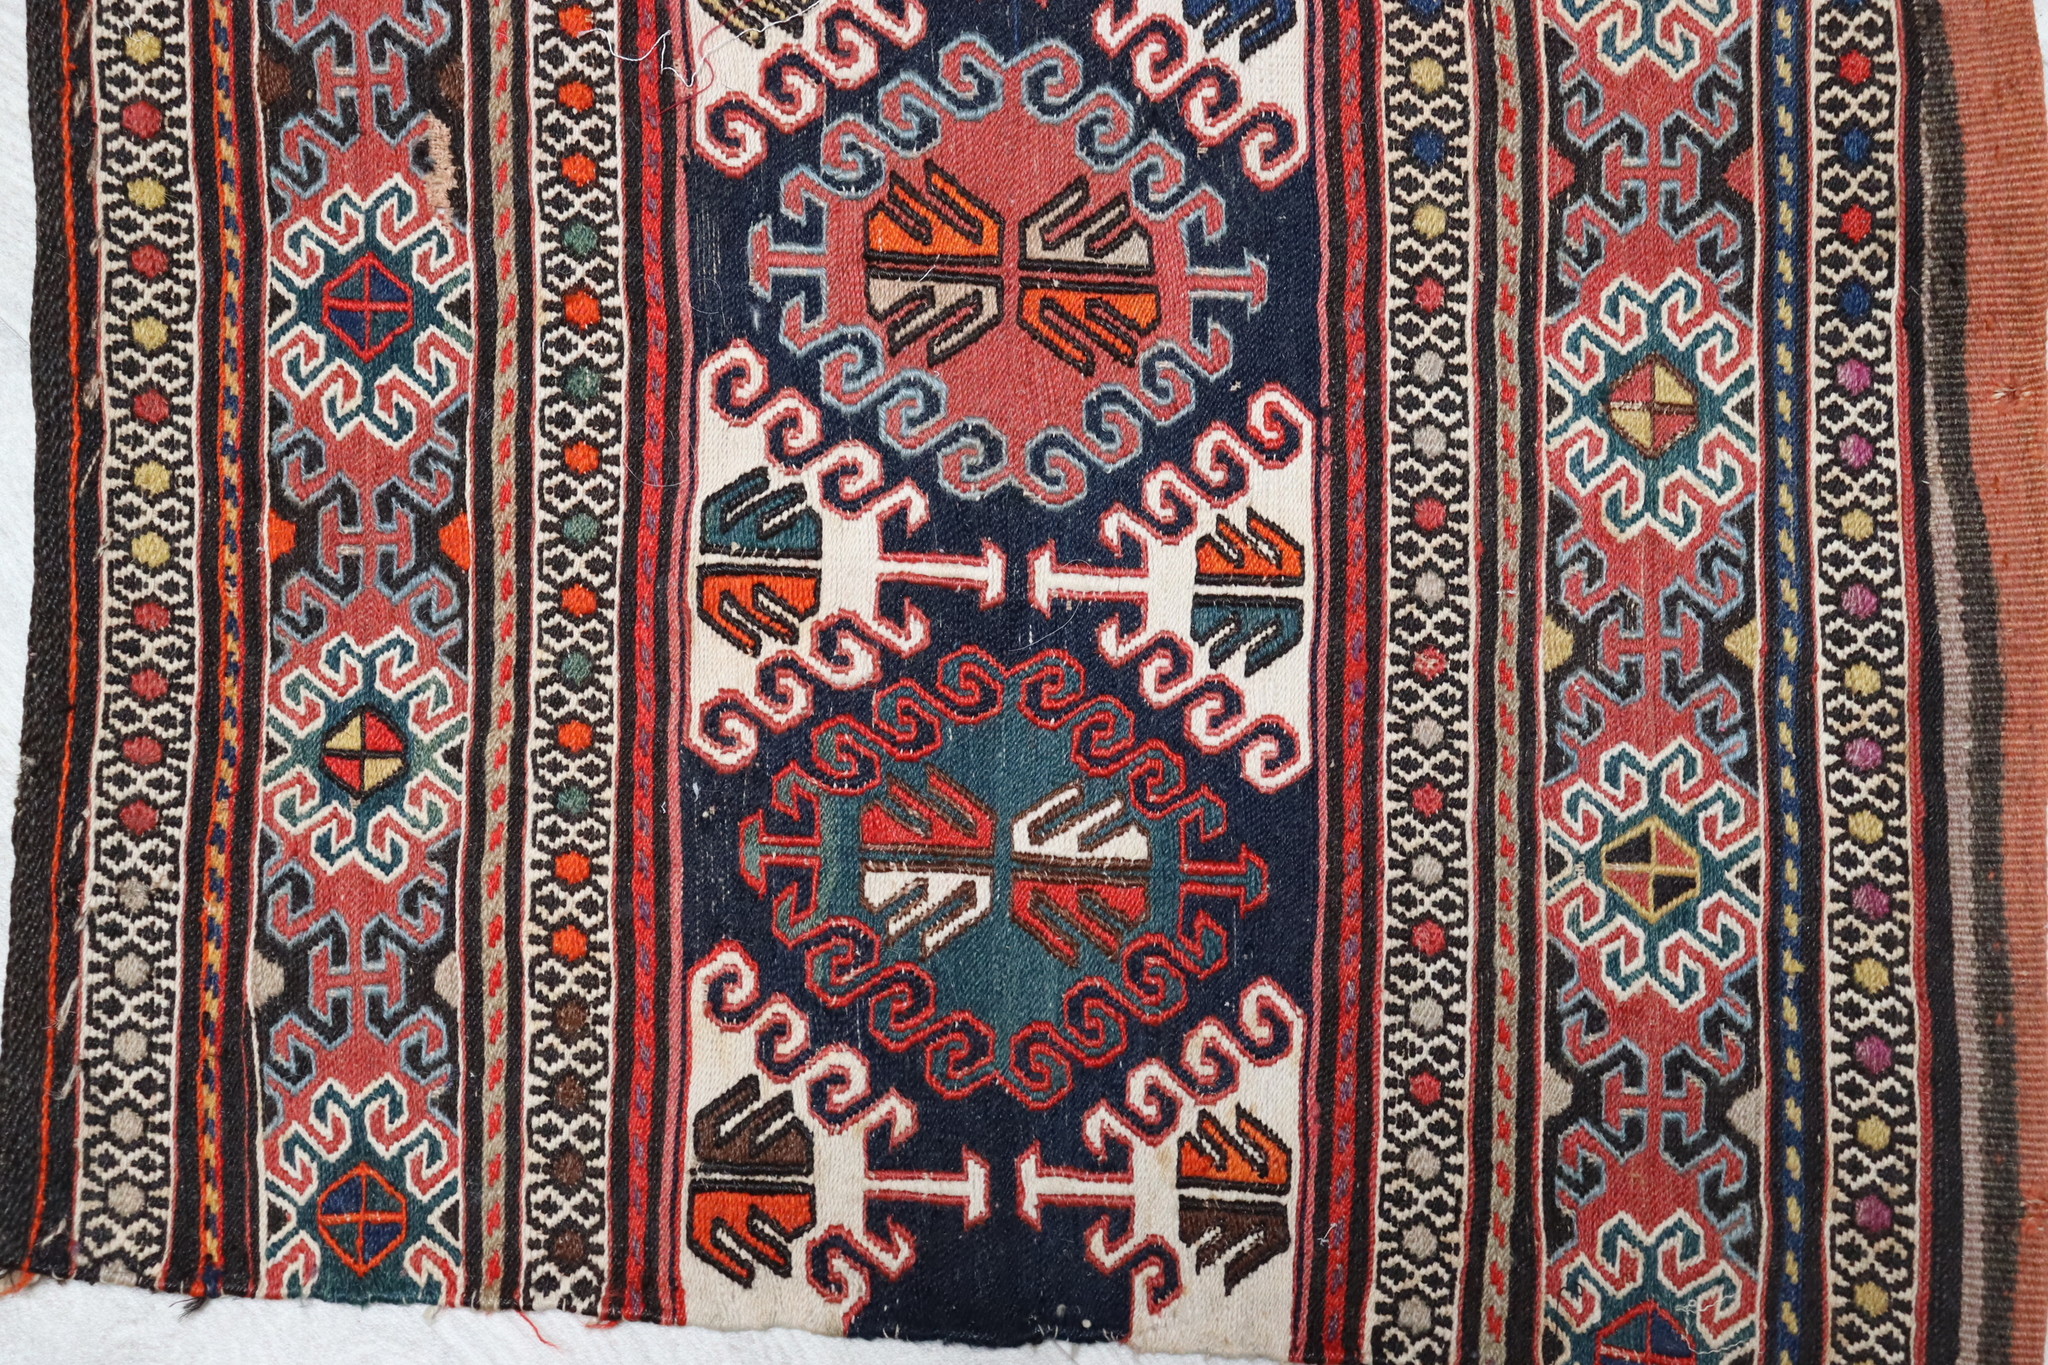 100x50 cm Antik orient handgewebte Teppich Nomaden Keim Shahsavan sumakh mafrash front Vorderseite Nr- 35